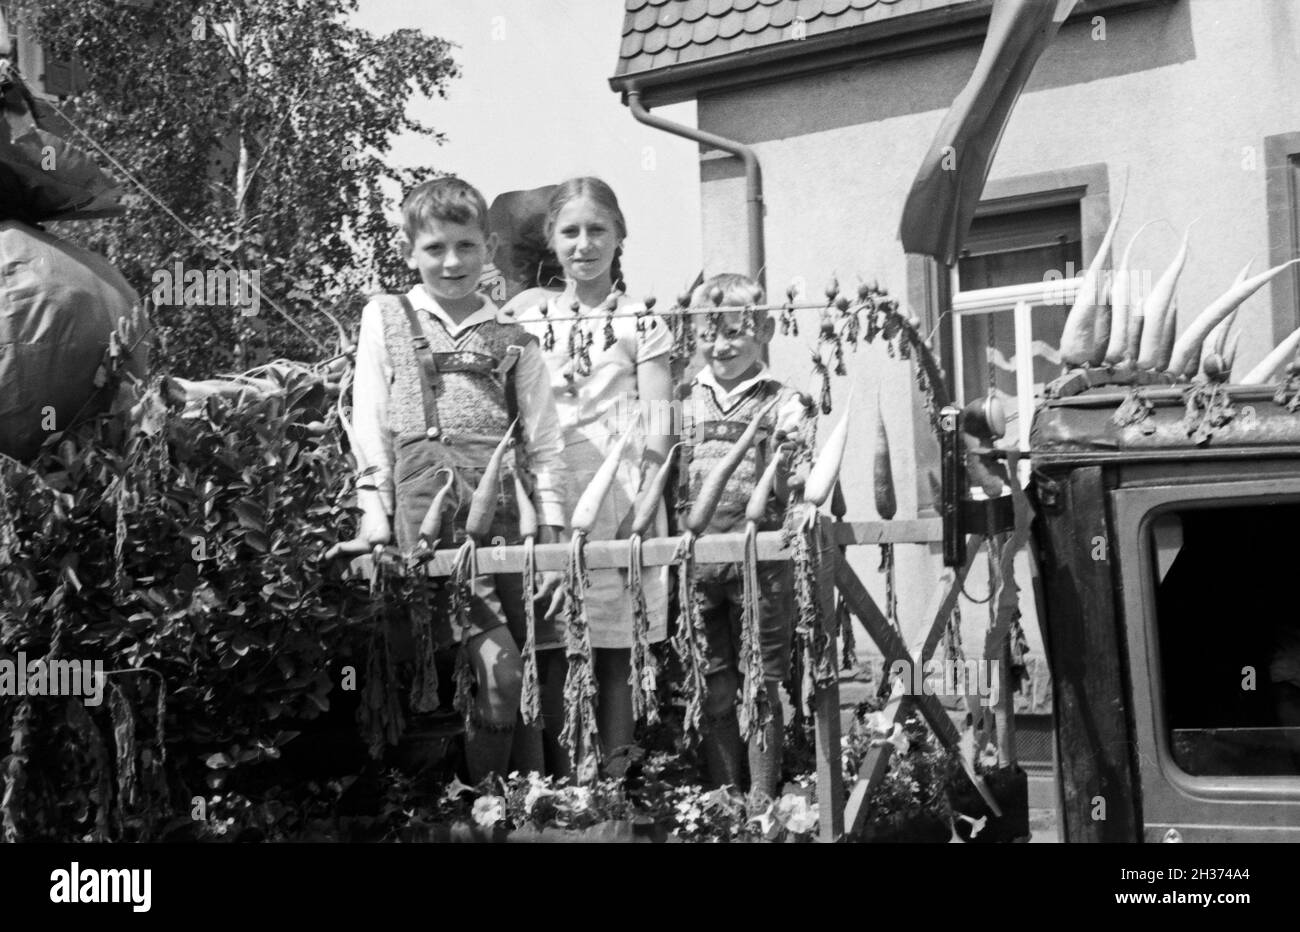 Kinder auf einem Festwagen im Festumzug beim Rettichfest in Schifferstadt, Deutschland 1930er Jahre. Children on a parade float at the pageant of the annual radish fair at Schifferstadt, Germany 1930s. Stock Photo